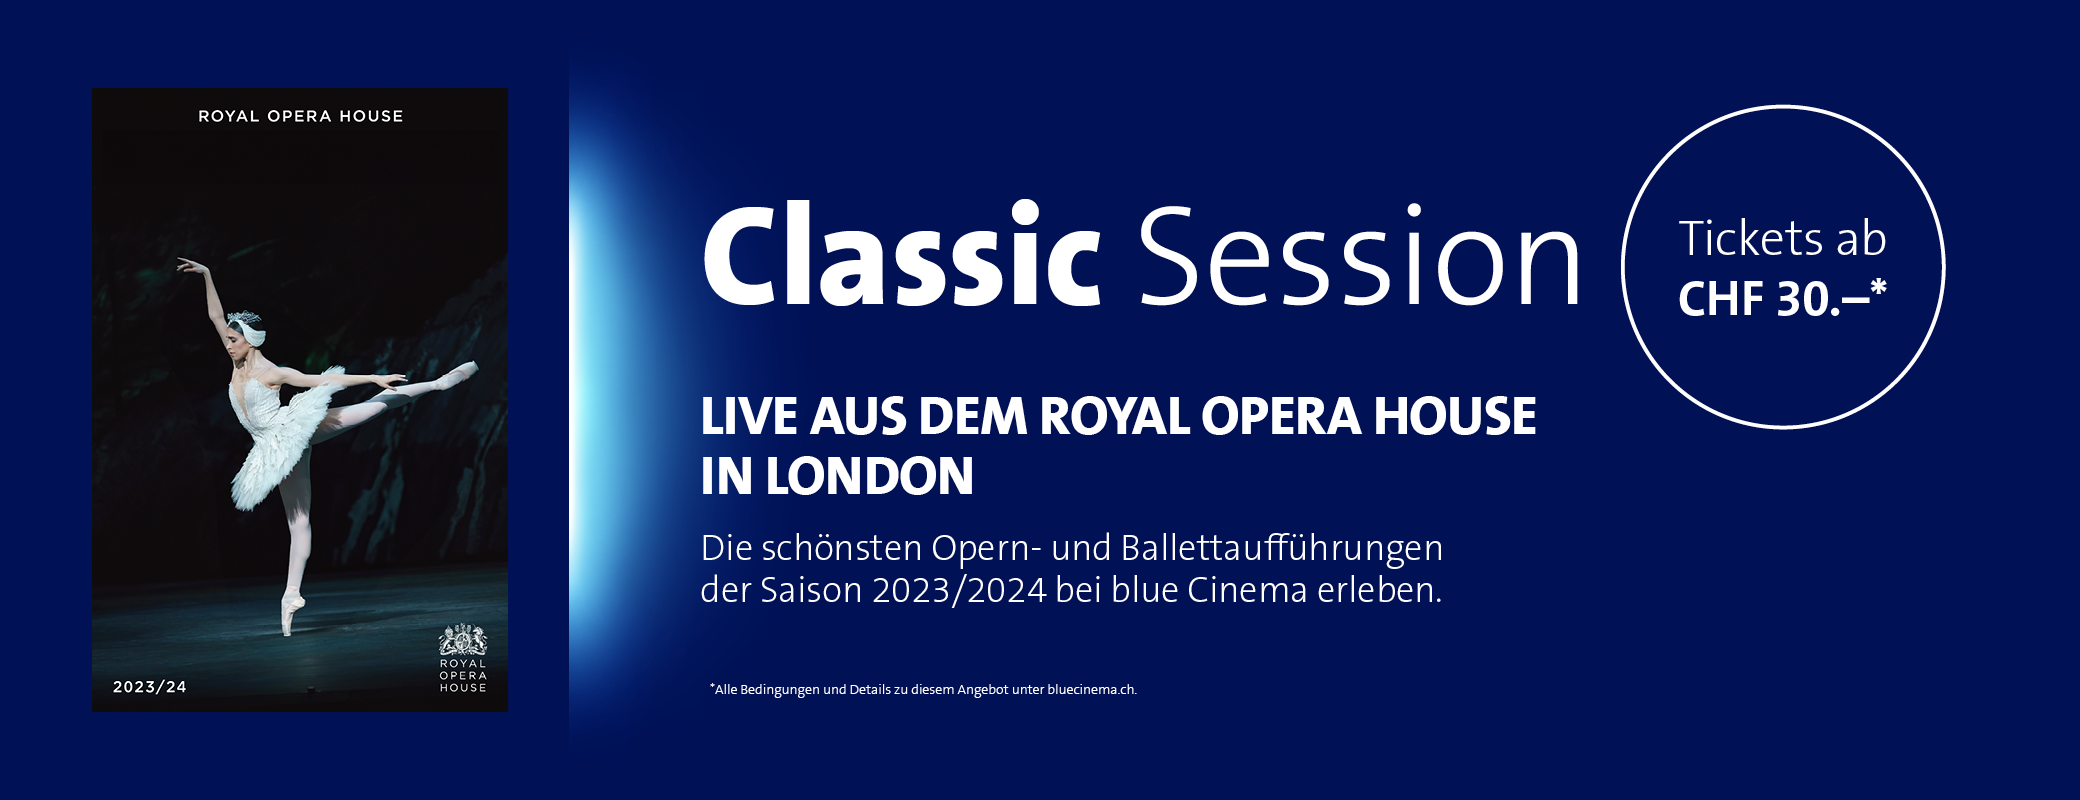 Werbebanner für klassische Konzert- und Ballettaufführungen live aus dem Royal Opera House in London, angeboten von blue Cinema für die Saison 2023/2024.